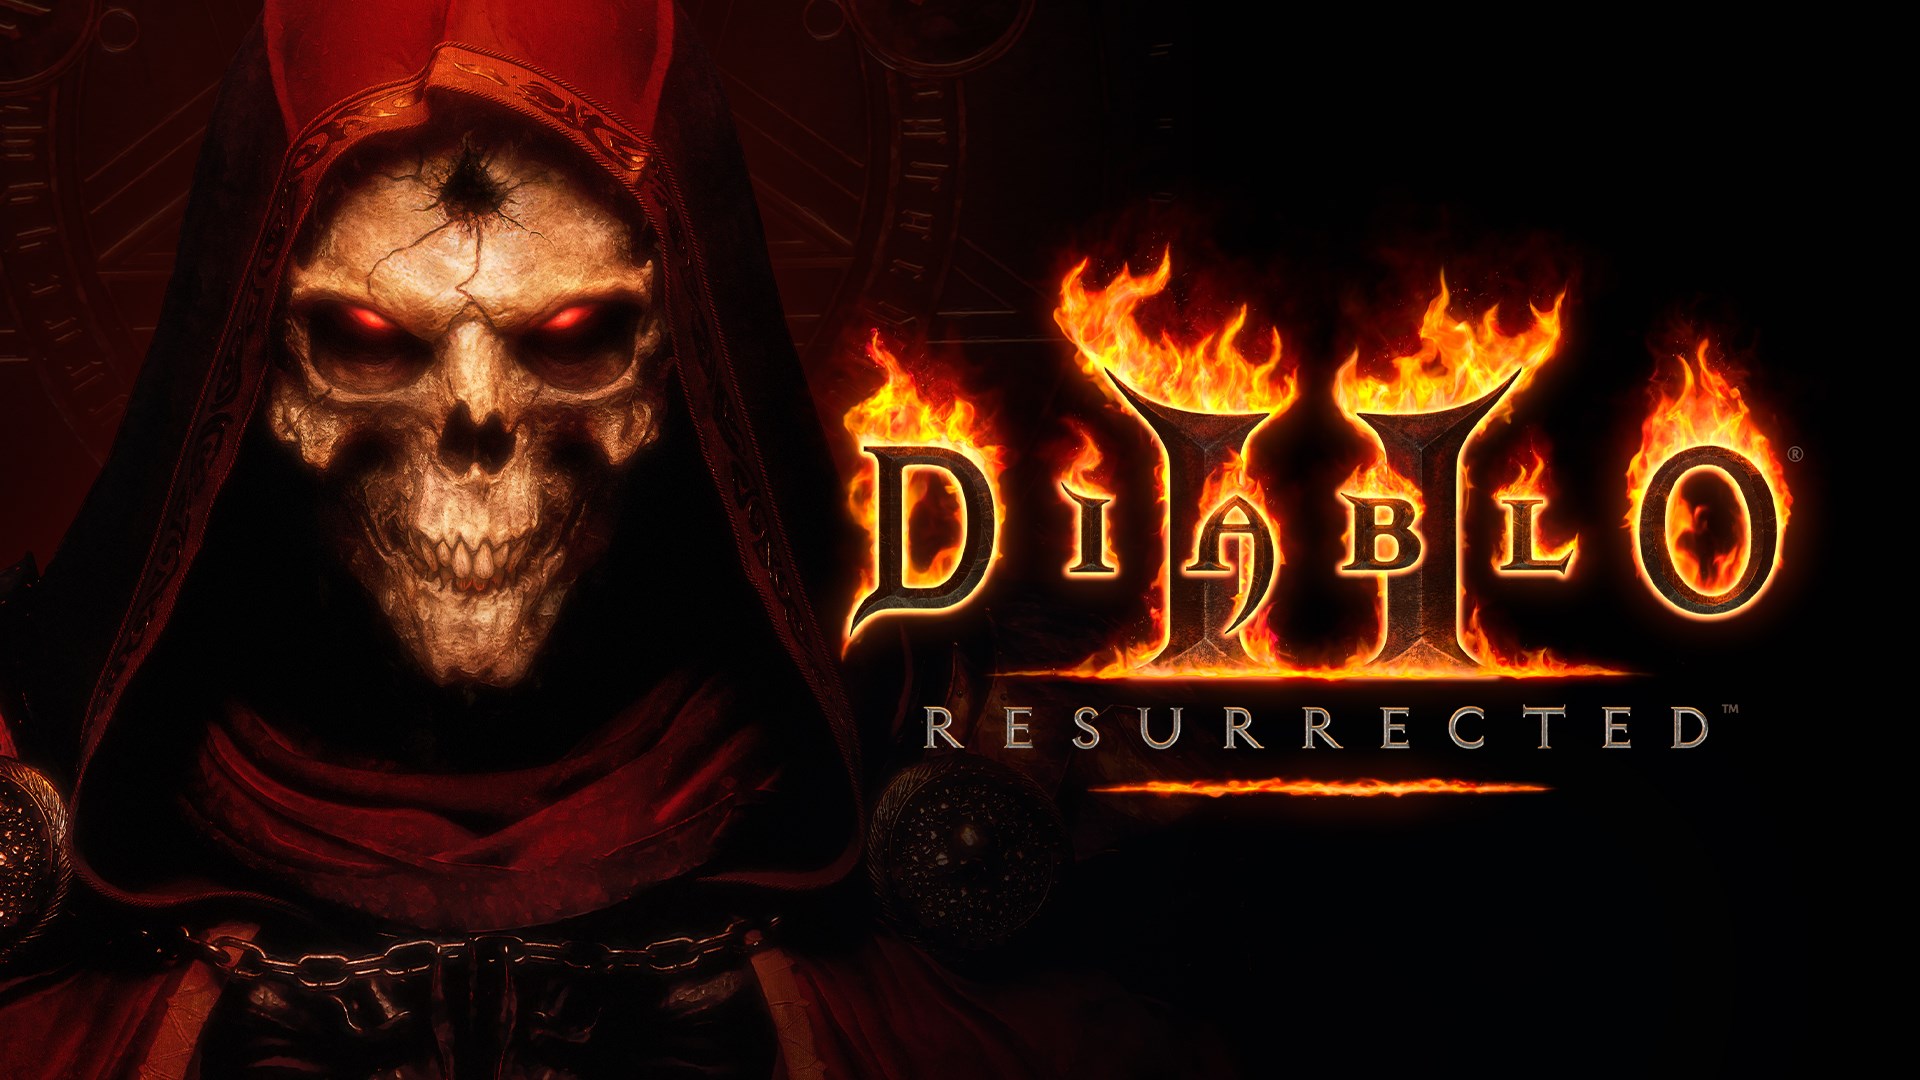 Blizzard etkinliğindeki tüm duyurular: Diablo IV, WoW, Hearthstone ve daha fazlası